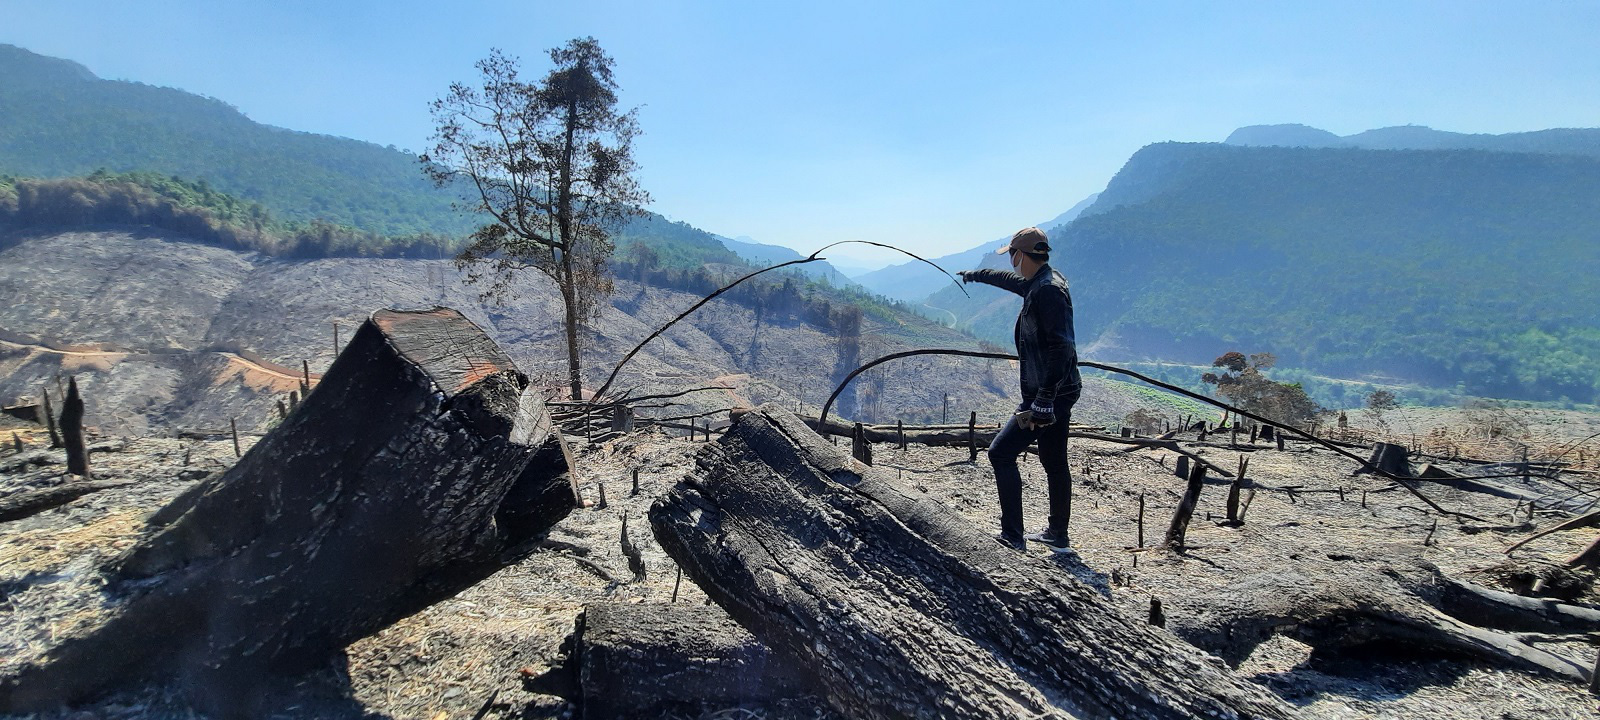 Vụ cháy rừng ở Quảng Nam: Mất trắng hơn 32 ha rừng phòng hộ - Ảnh 1.